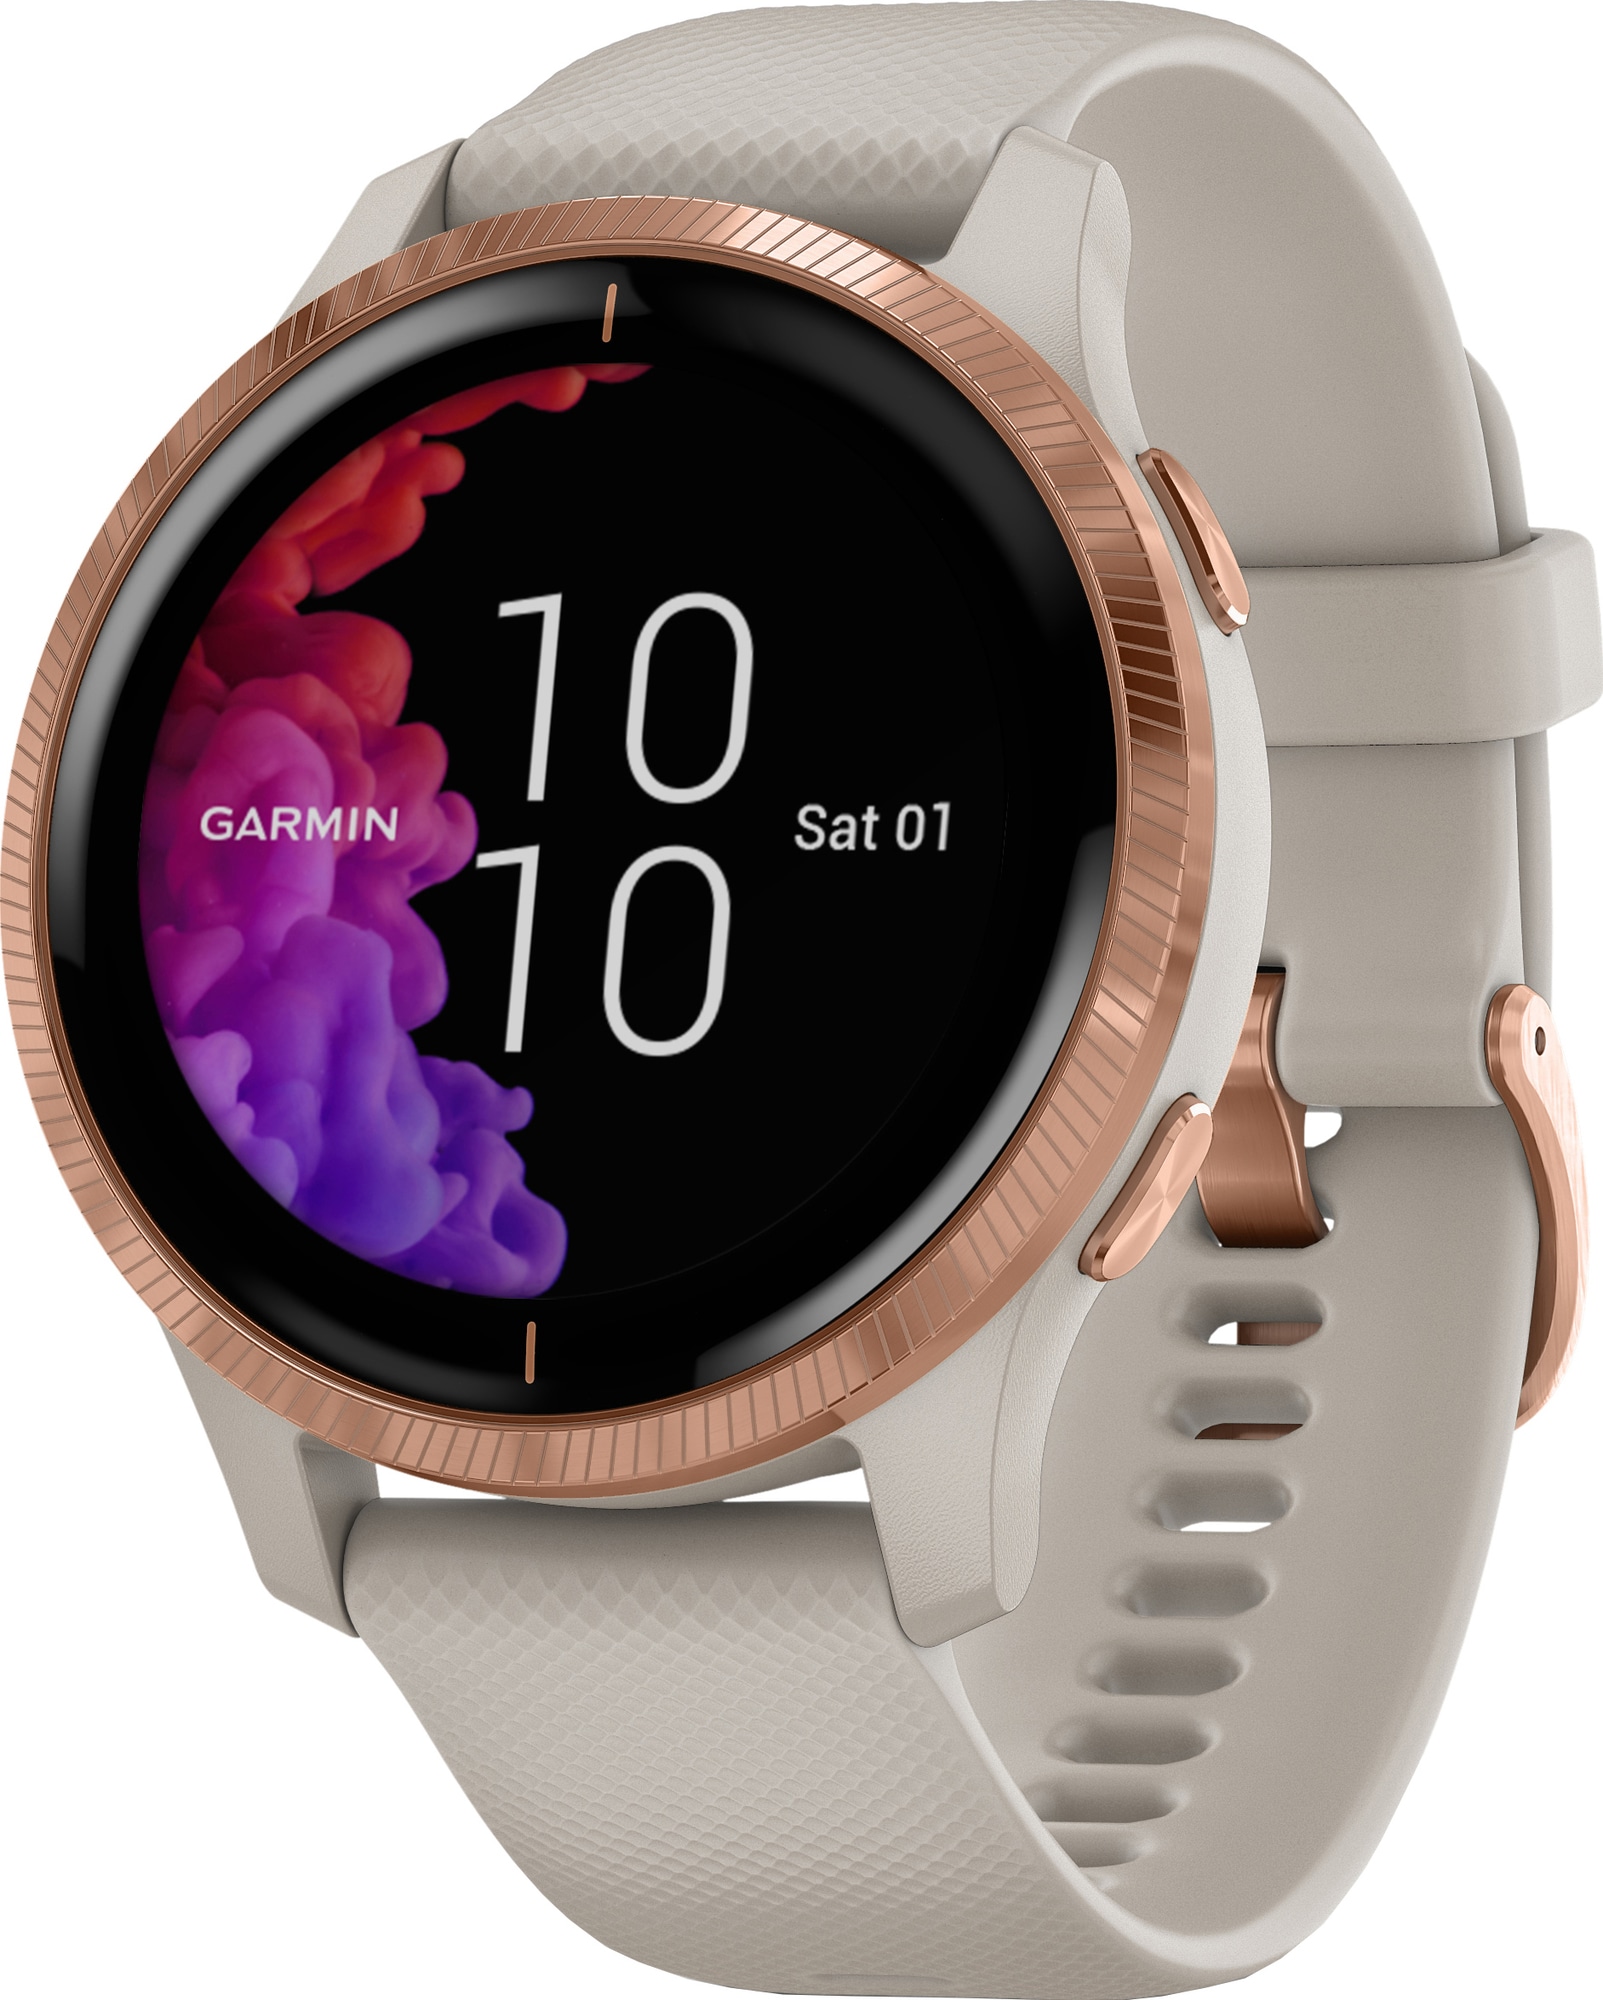 elektropositive klasse svimmelhed Garmin Venu smartwatch med GPS (sand/rose) | Elgiganten